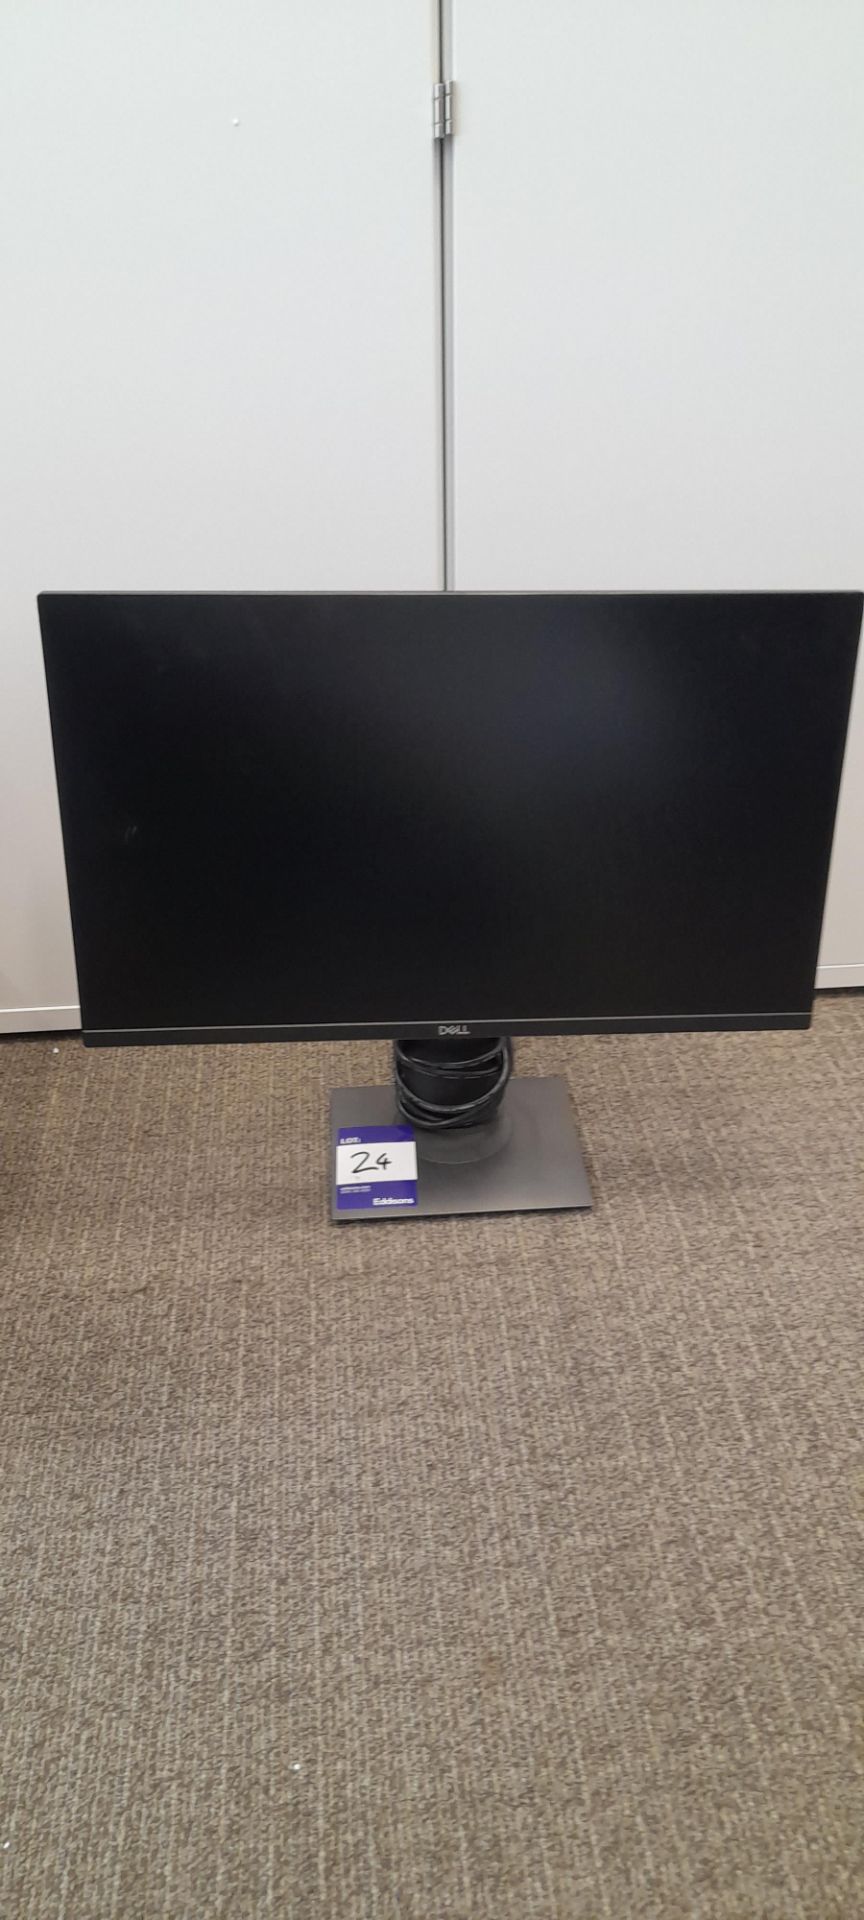 Dell 24” flat panel monitor, P2419H, S/N: CN-06YY30-TV100-898-1QYI-A02